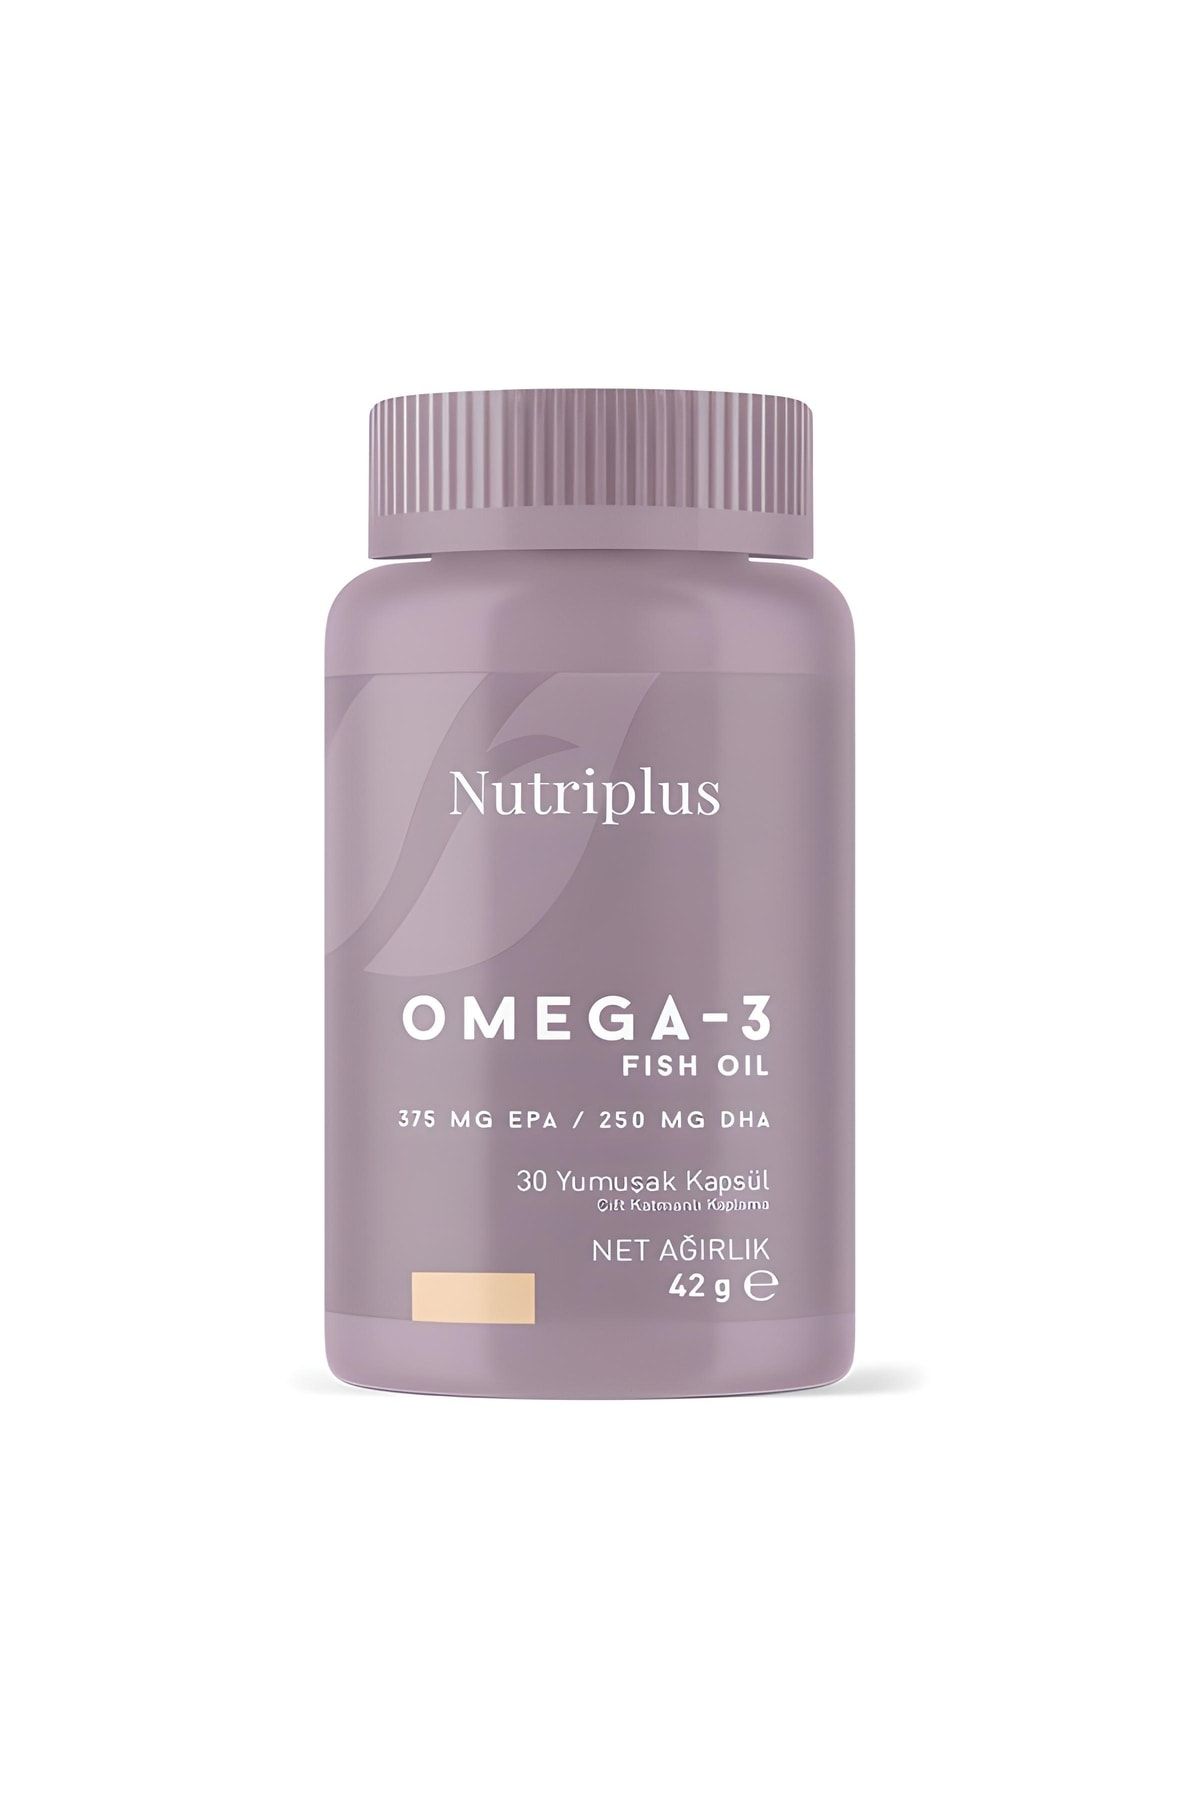 Farmasi -nutriplus Omega 3 Balık Yağı-30 Yumuşak Kapsül Çift Katmanlı Kaplama 375mg Epa Ve 250 Mg Dha